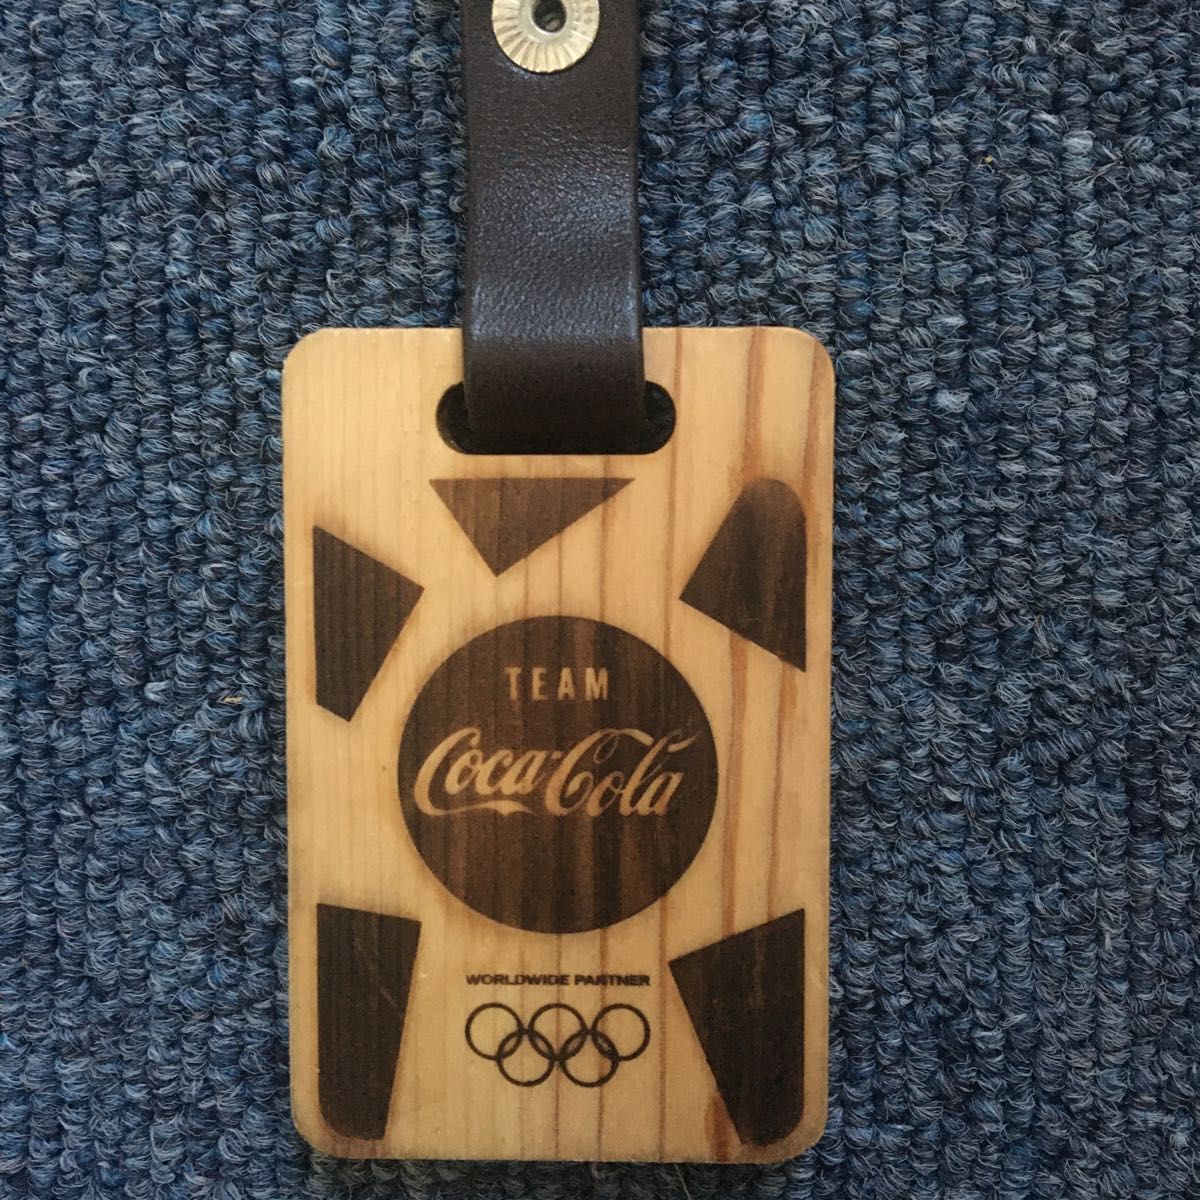 ★東京2020大会 オリンピック選手使用 磁気記録入りキーホルダー　衣装袋入り コカコーラ coca cola